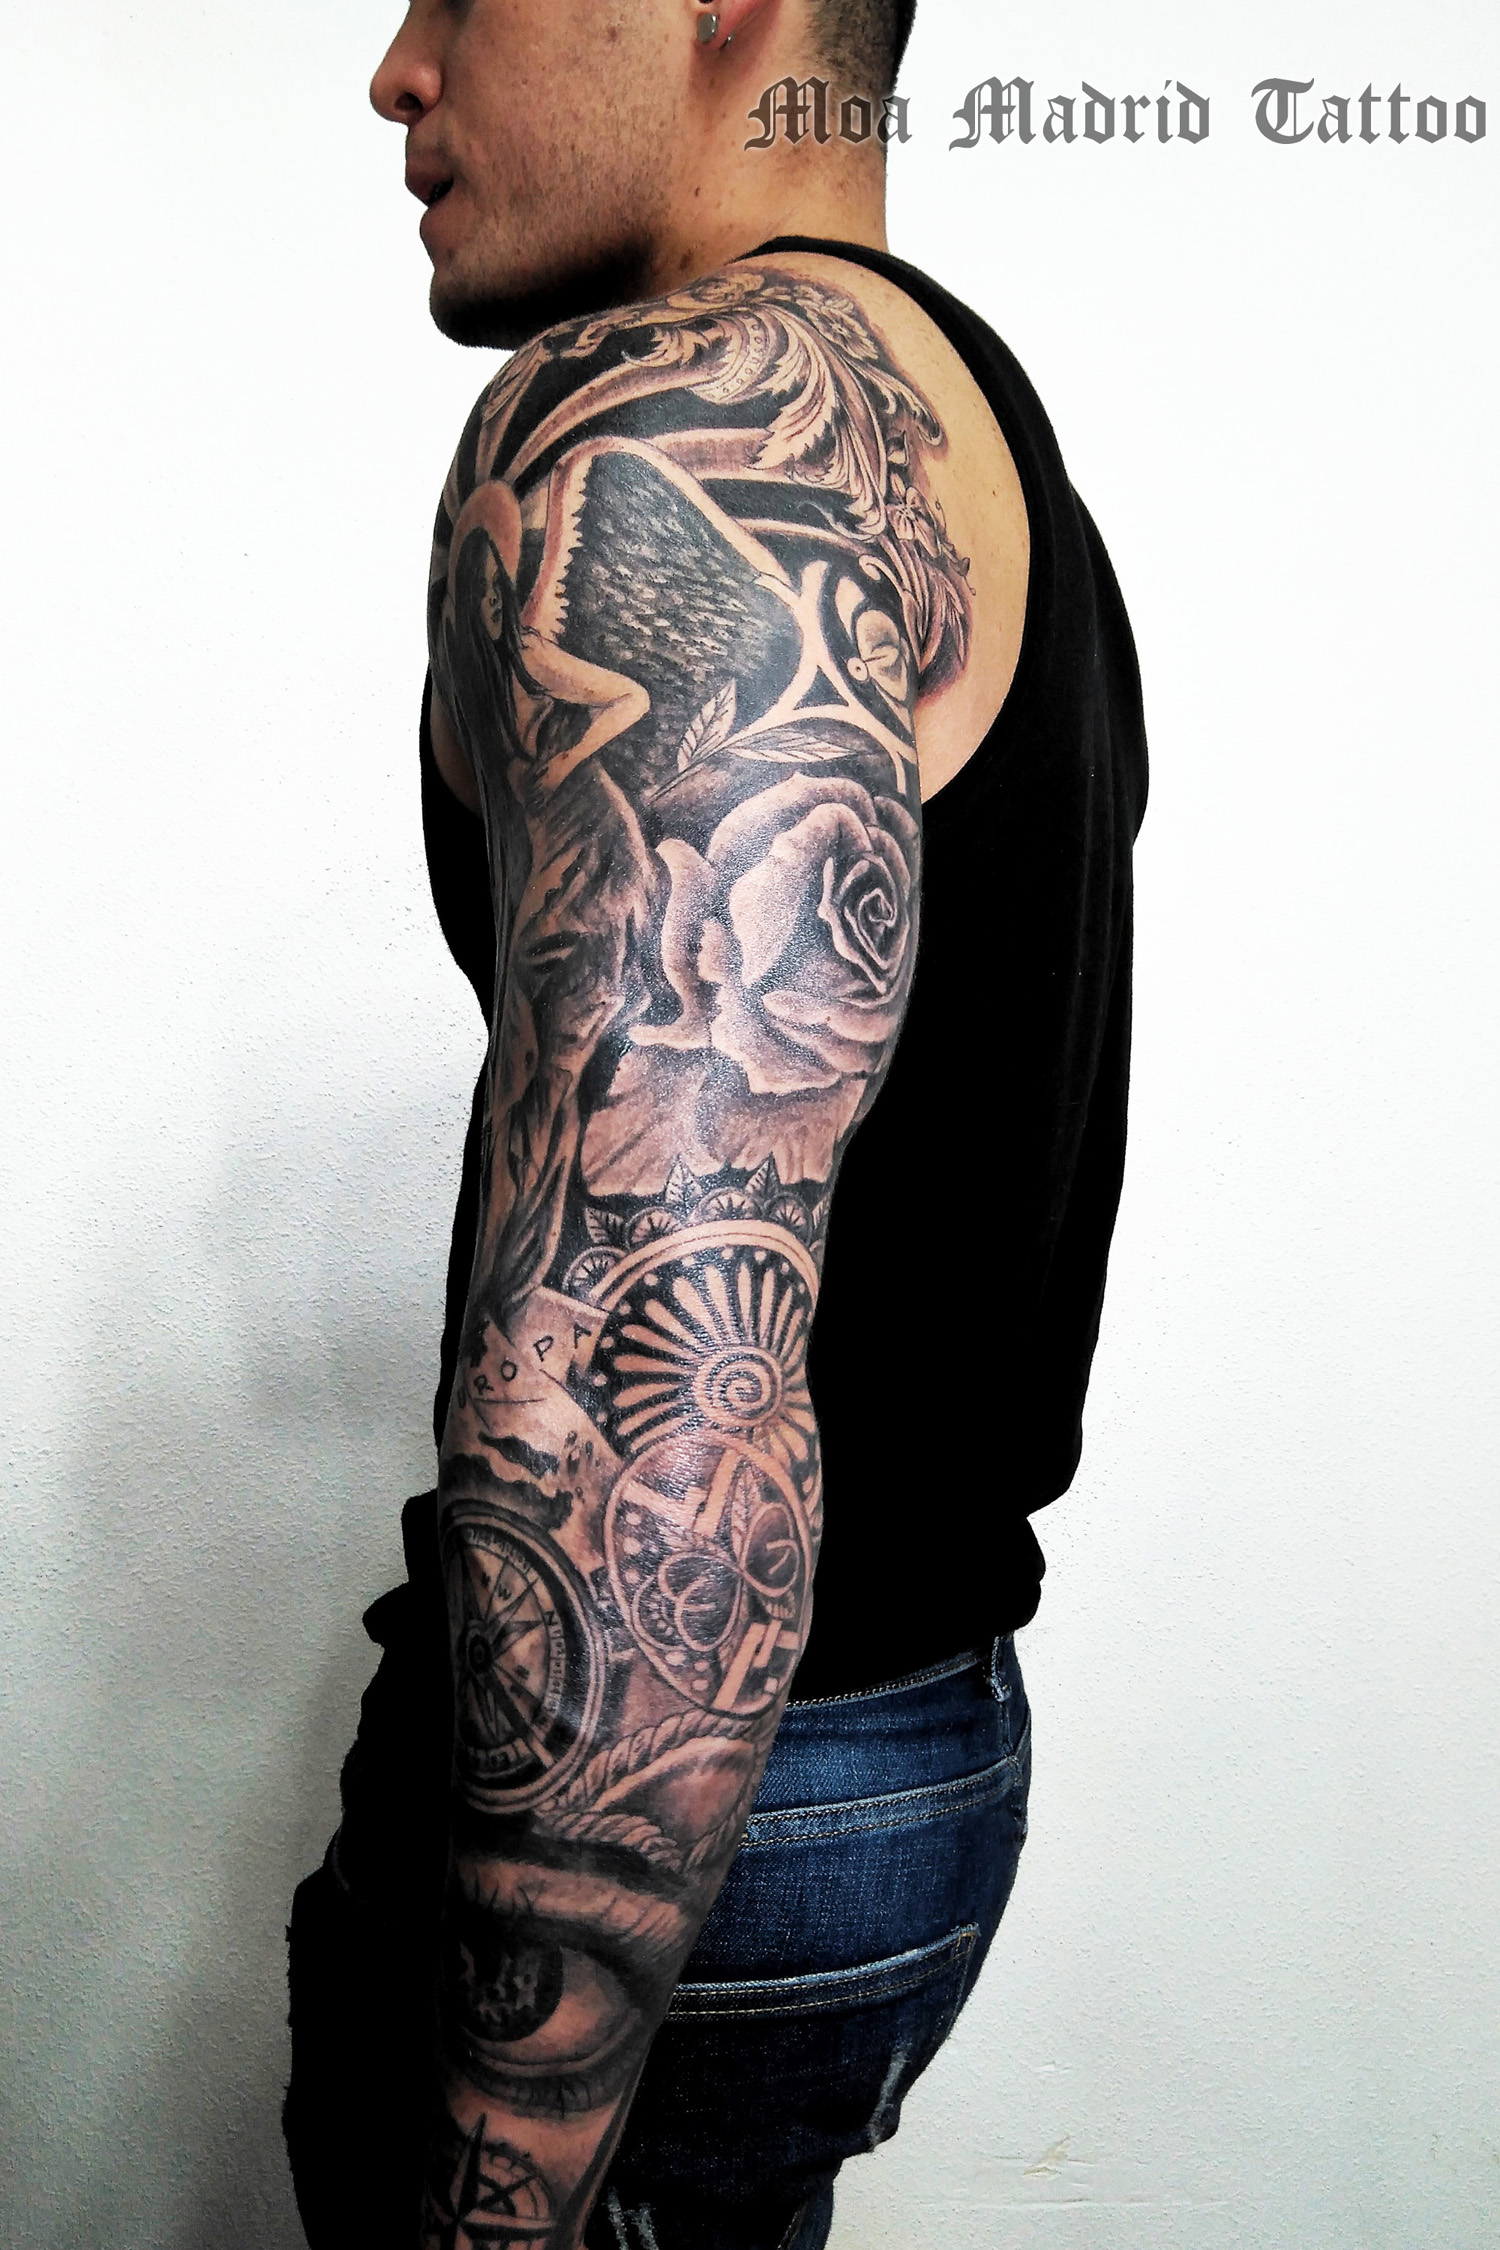 Tatuajes de hombro a muñeca: decoración vegetal en el hombro, rosa en el tríceps, tatuaje geométrico en el codo